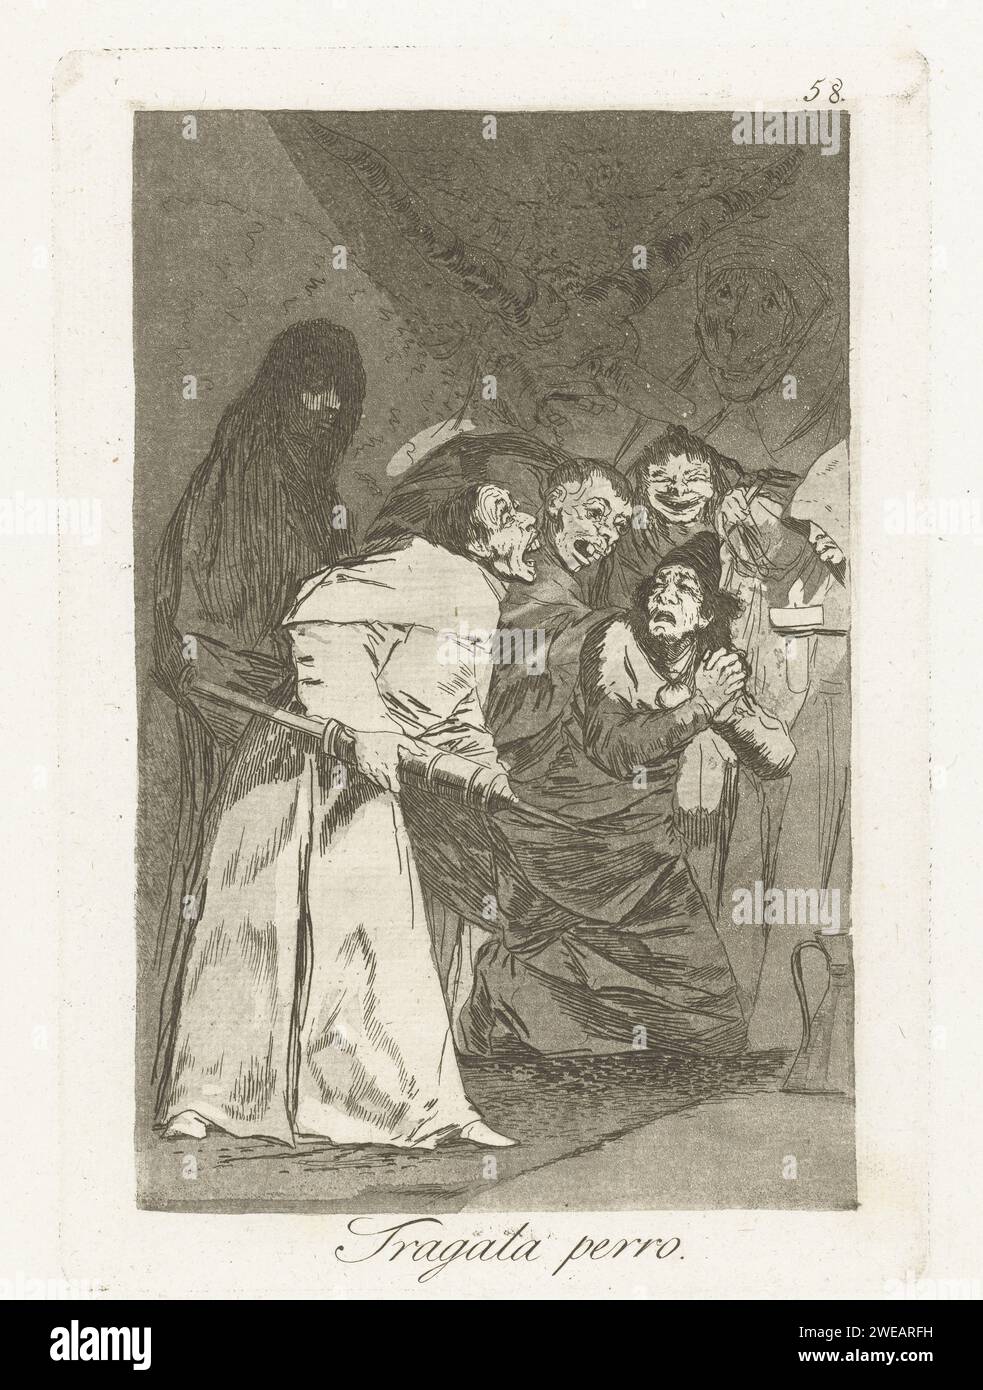 Schlucken, Hund, Francisco de Goya, 1797 - 1799 drucken Sie Einen Mönch mit einer großen Spritze. Drei andere Mönche halten einen bettelnden Mann. Dahinter eine Eule und zwei Proben. 58 Drucke aus der Los Caprichos-Serie. Spanien Papierätzung / Trockenspitze Mönch(e), Mönch(e). Injektion  Medizin Stockfoto